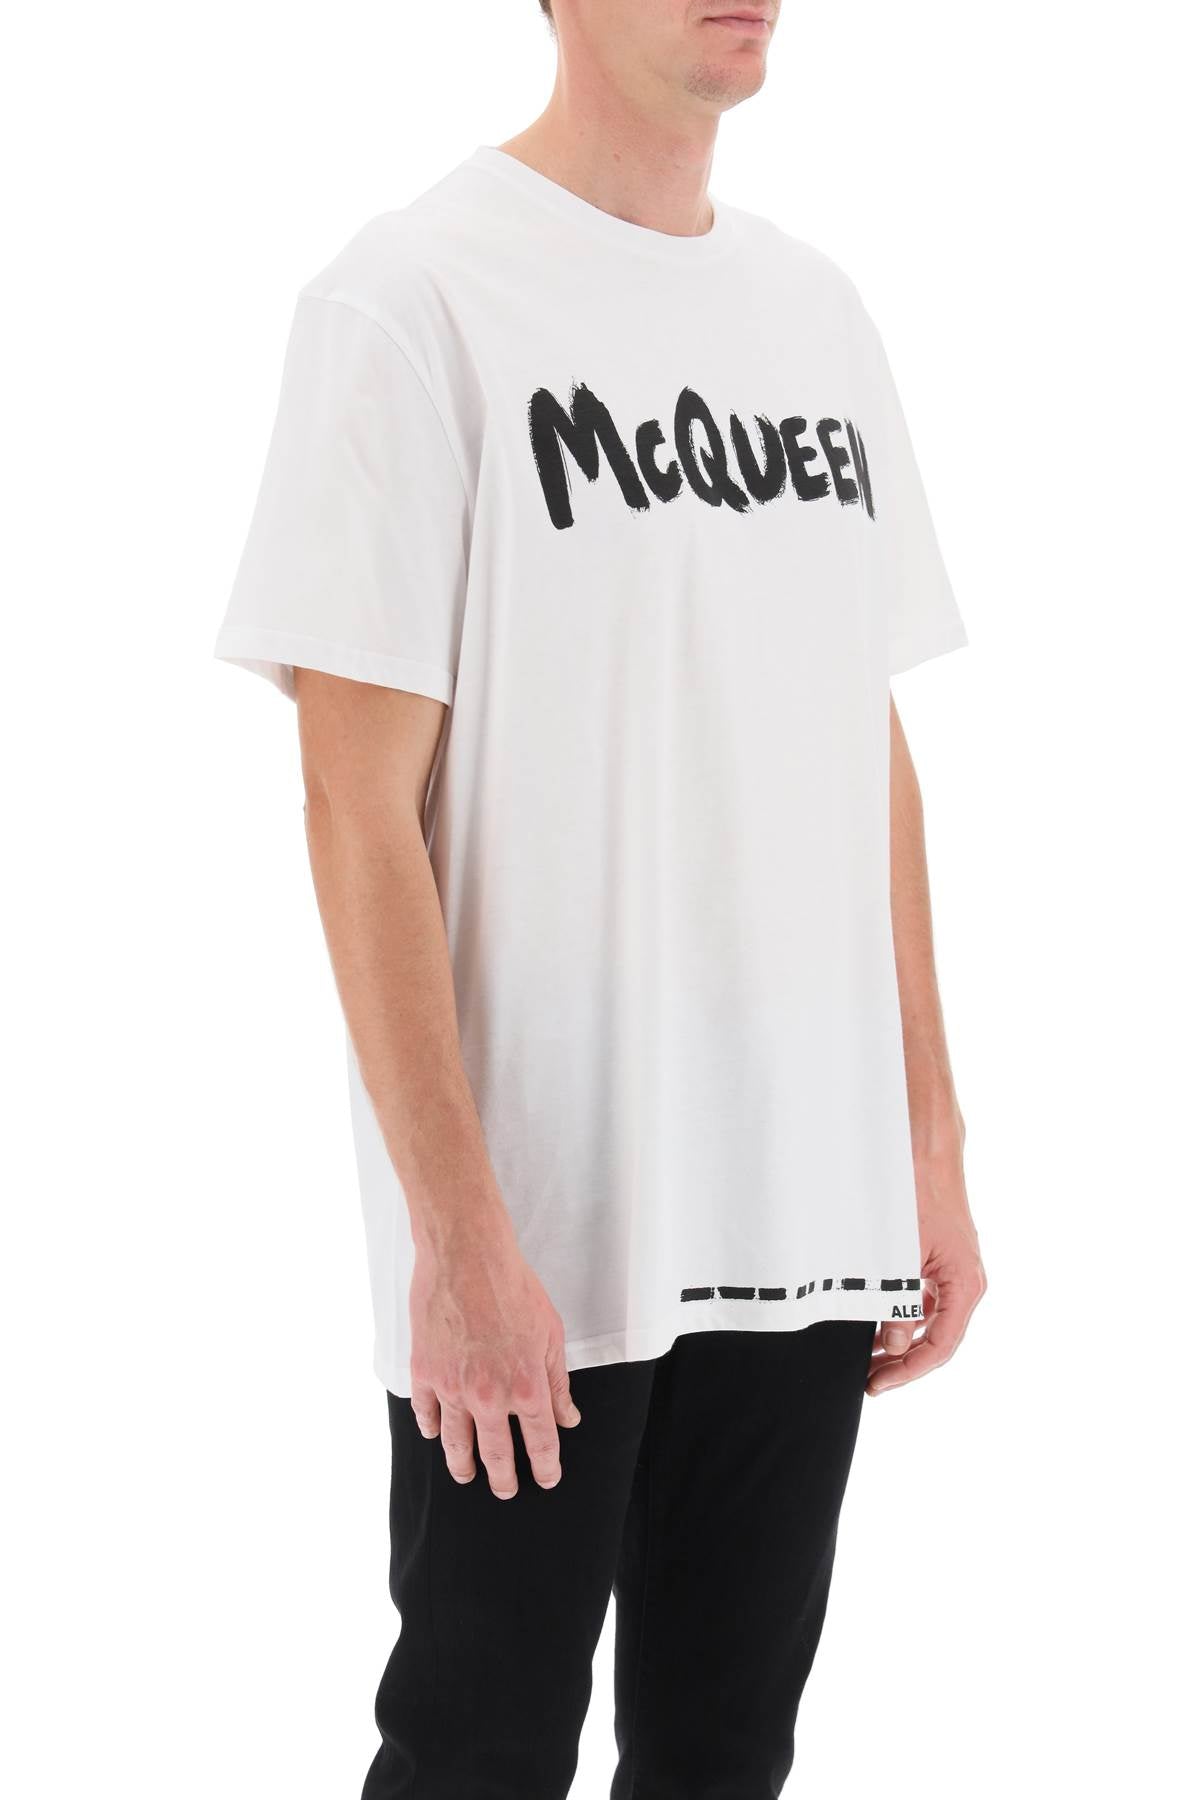 Alexander mcqueen mcqueen graffiti t-shirt-1